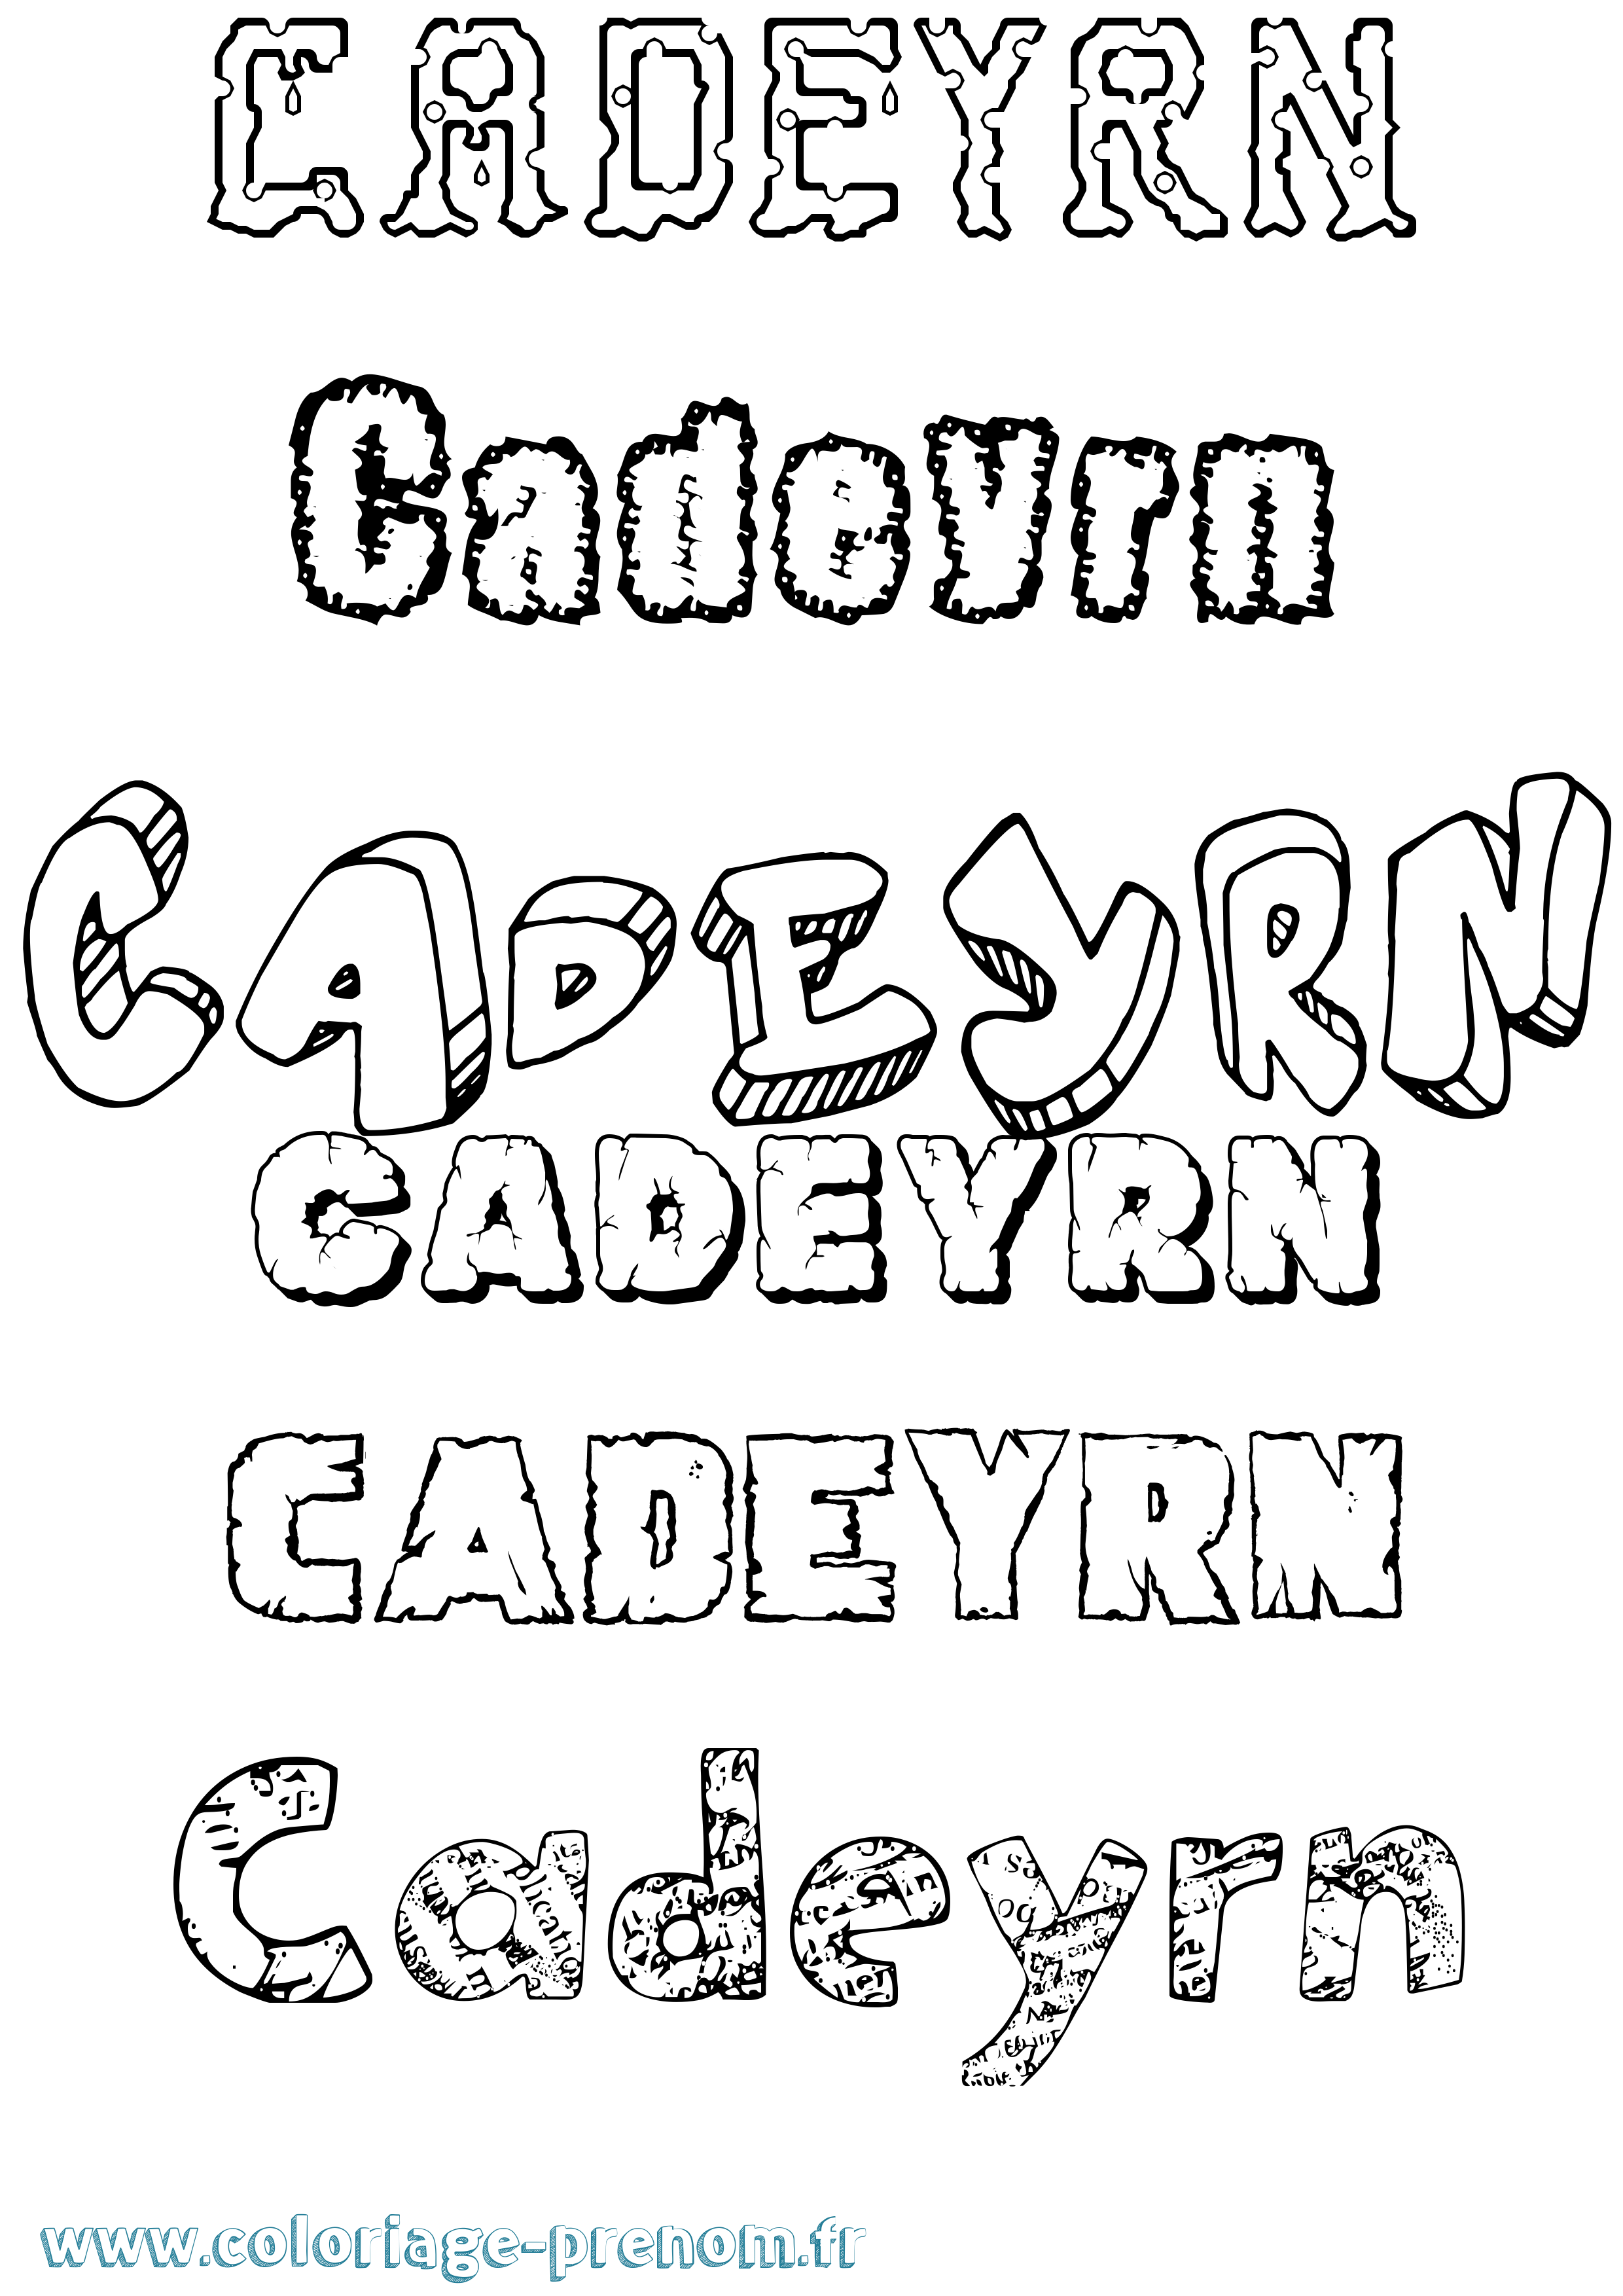 Coloriage prénom Cadeyrn Destructuré